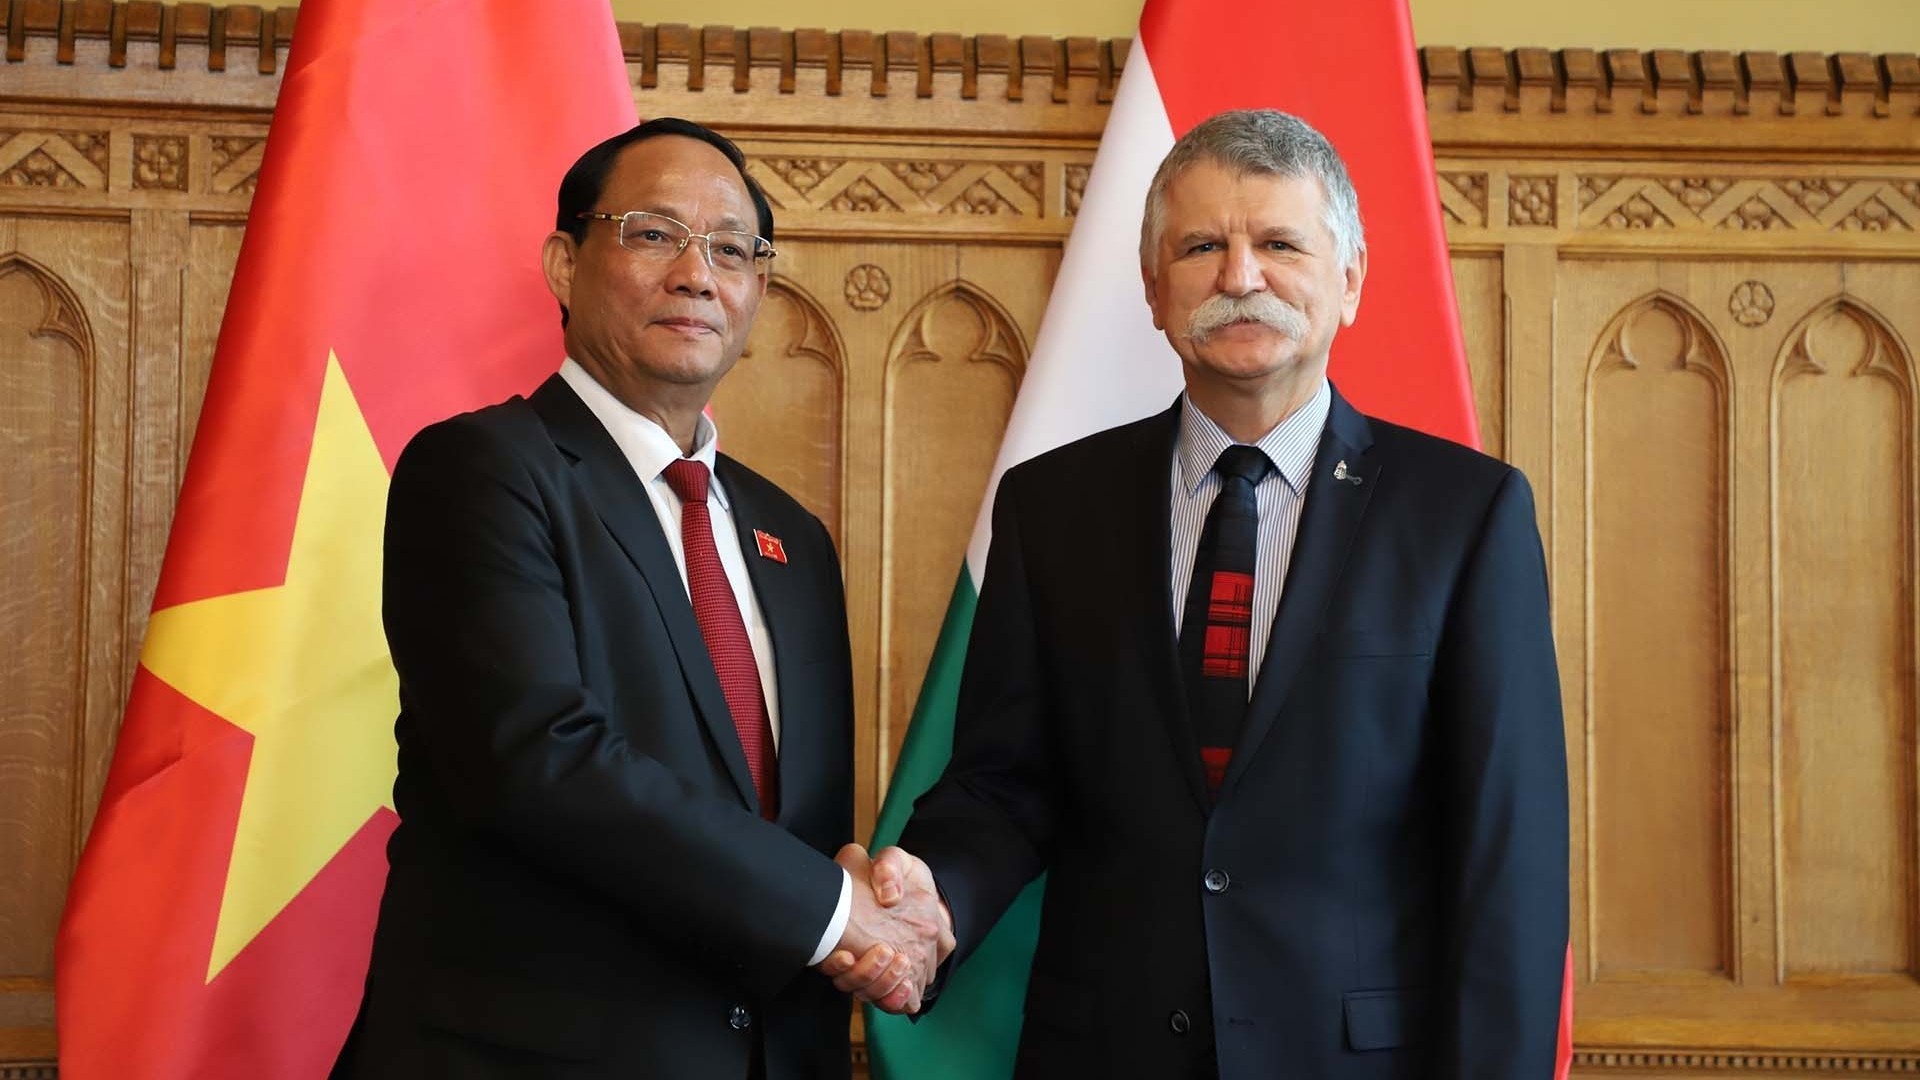 Việt Nam là đối tác quan trọng hàng đầu của Hungary tại Đông Nam Á